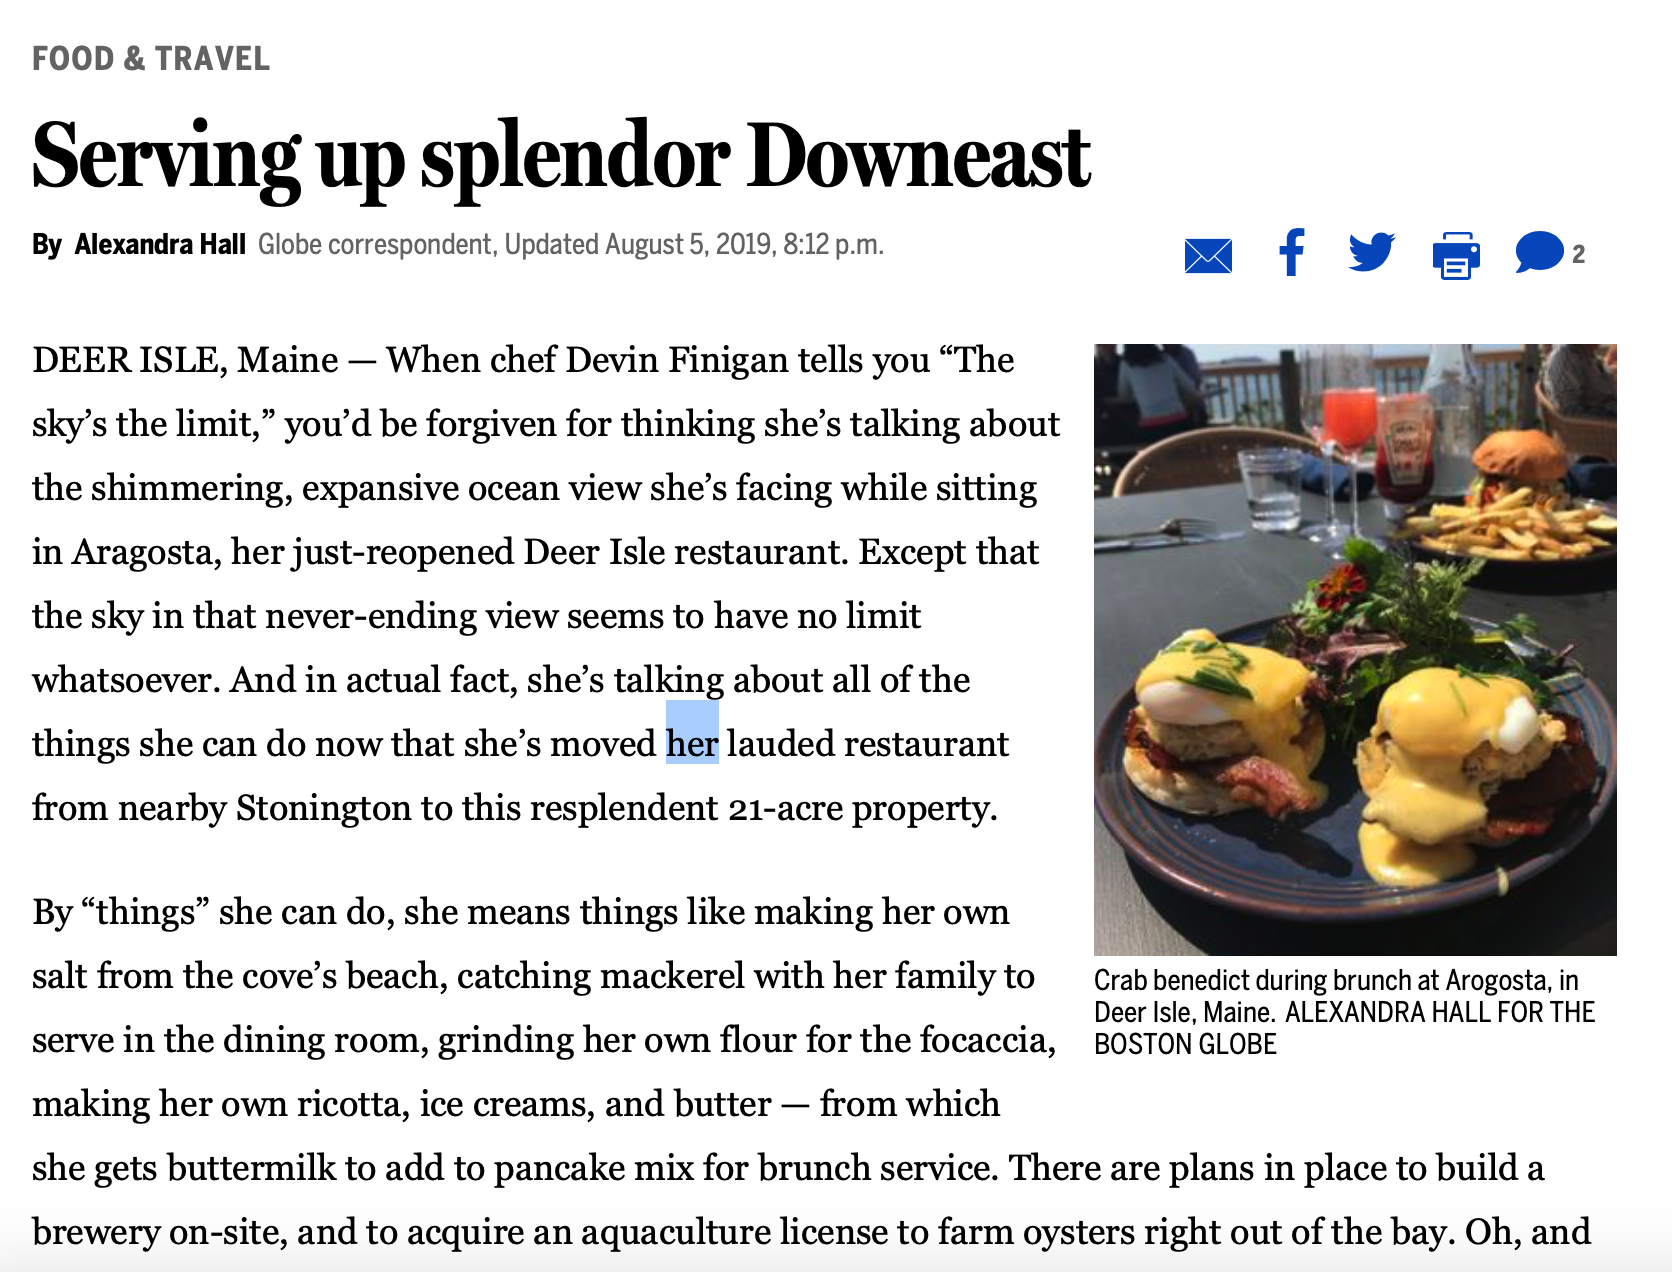 Splendor DownEast in Boston Globe 8/5/19